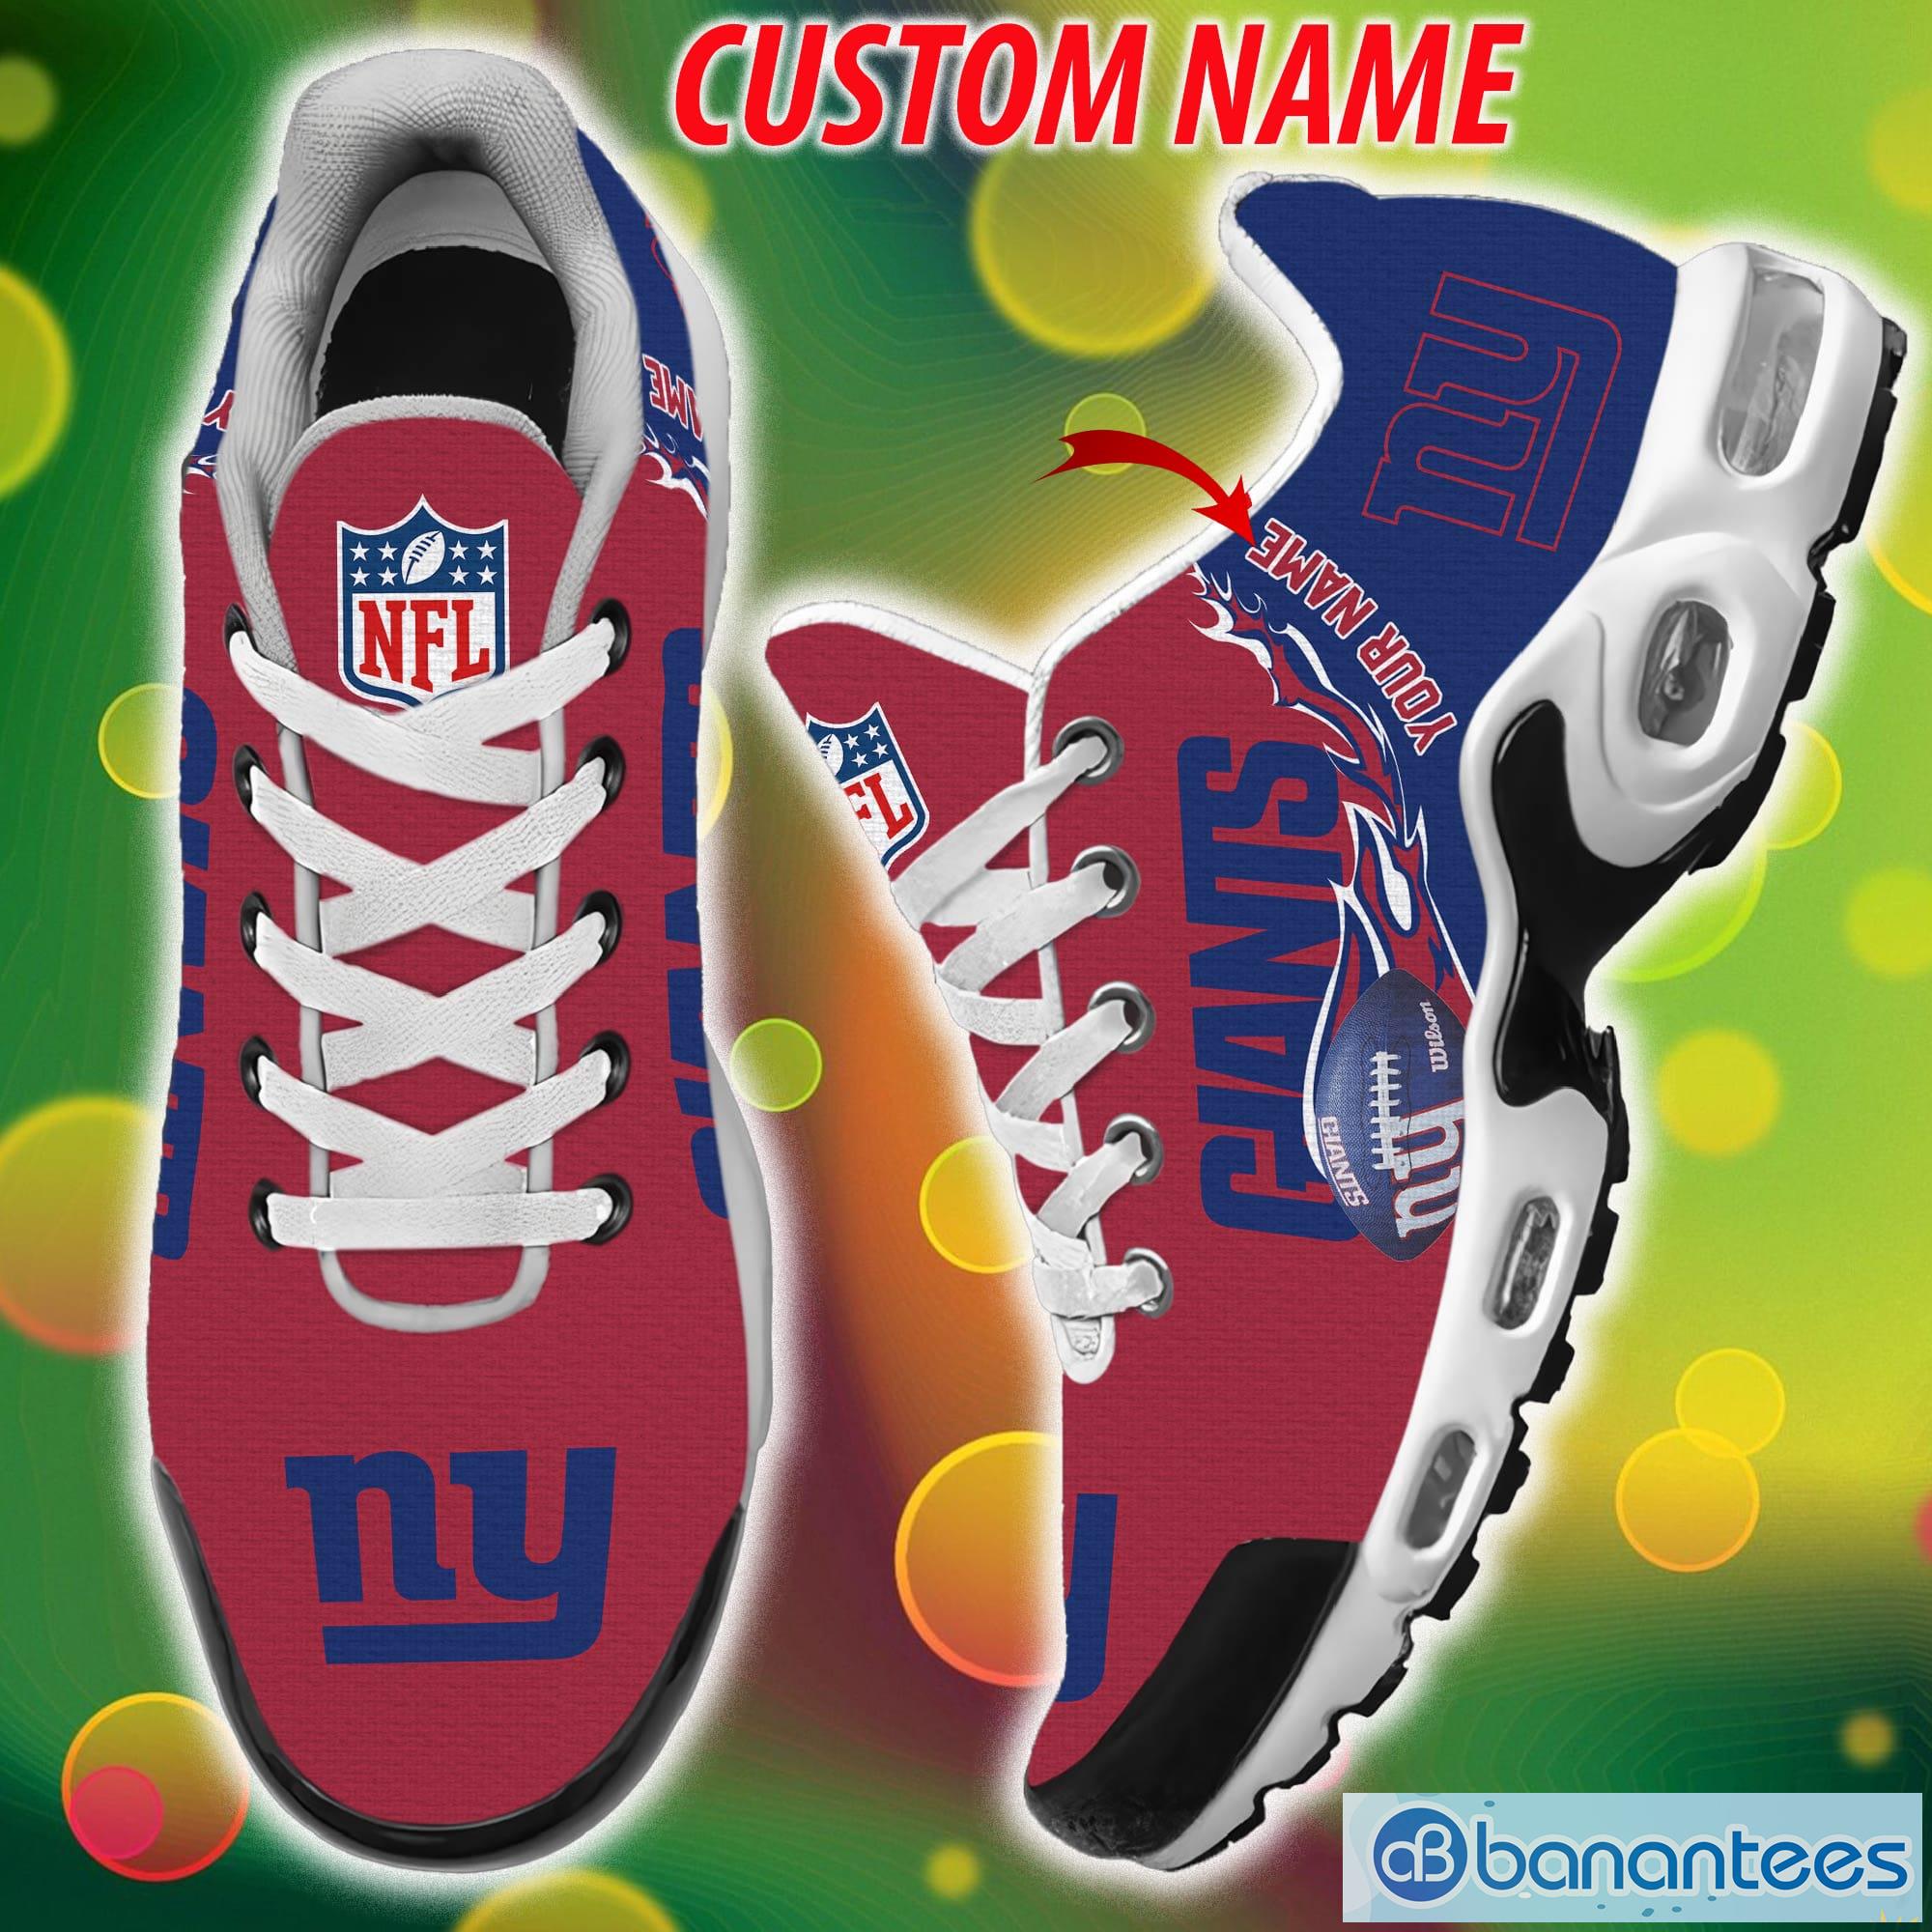 New York Giants NFL Team Luxury Brand Sneakers Custom Name Air